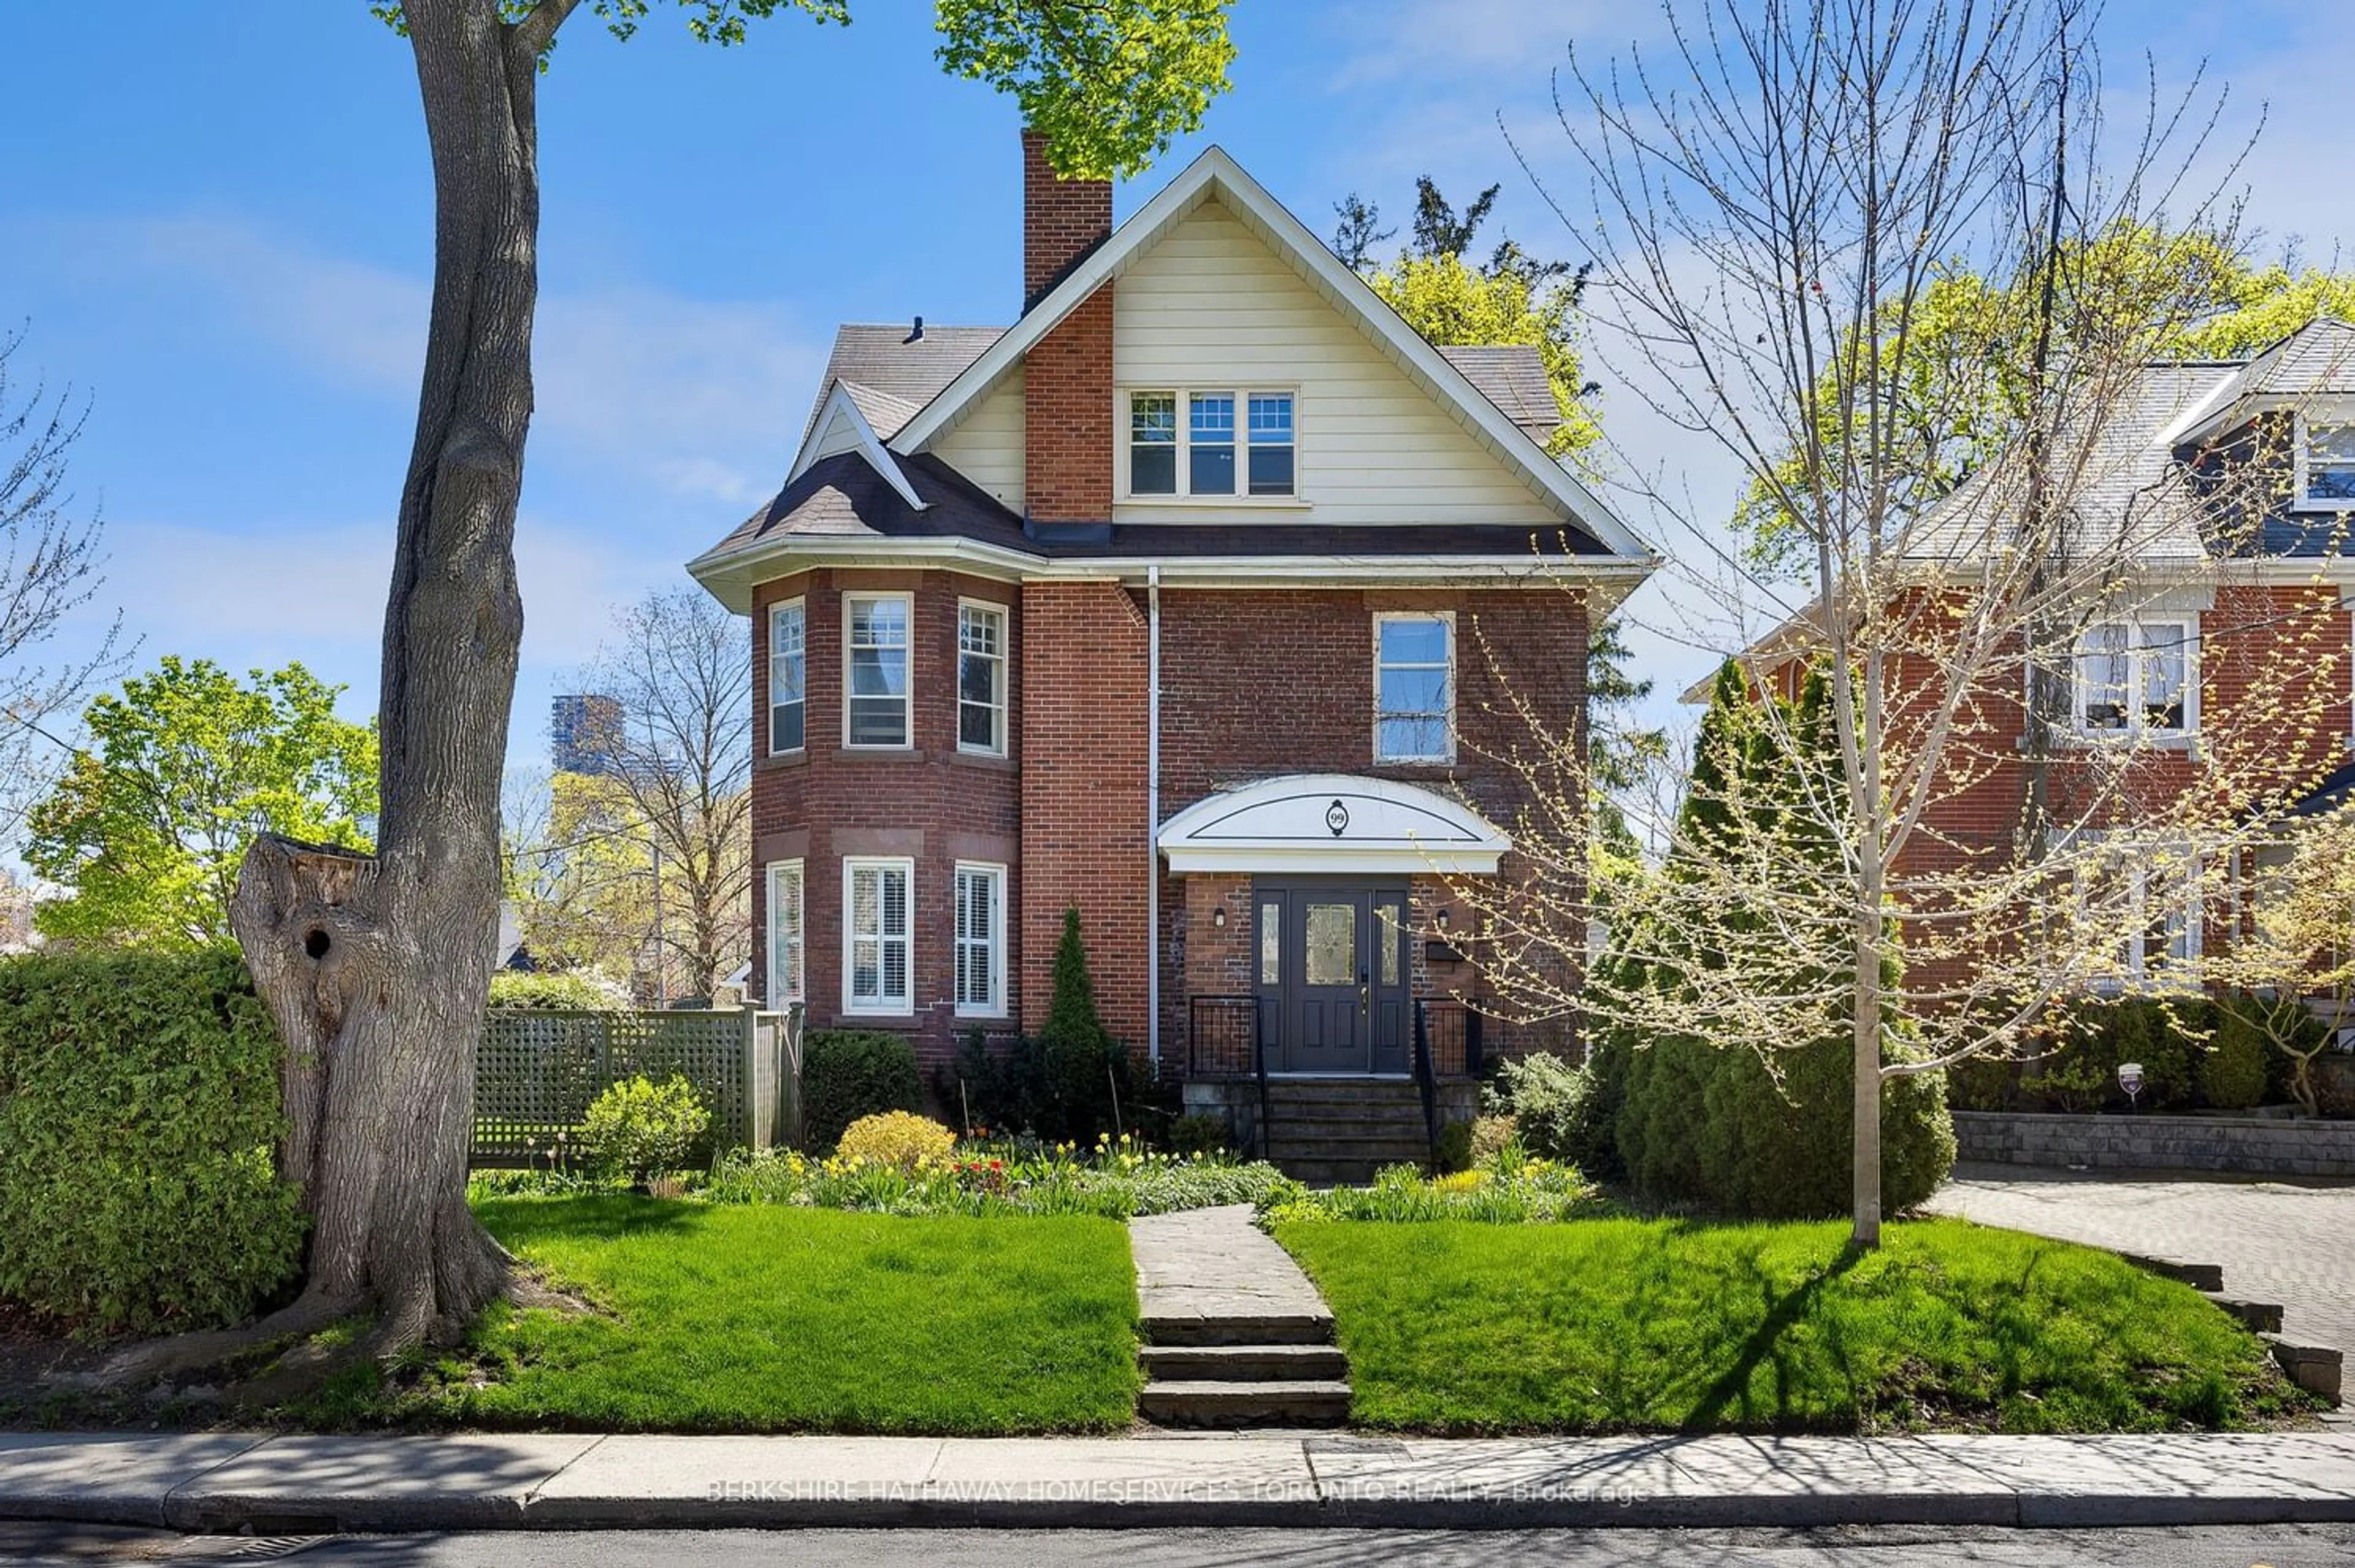 Home with brick exterior material for 99 Alexandra Blvd, Toronto Ontario M4R 1M3